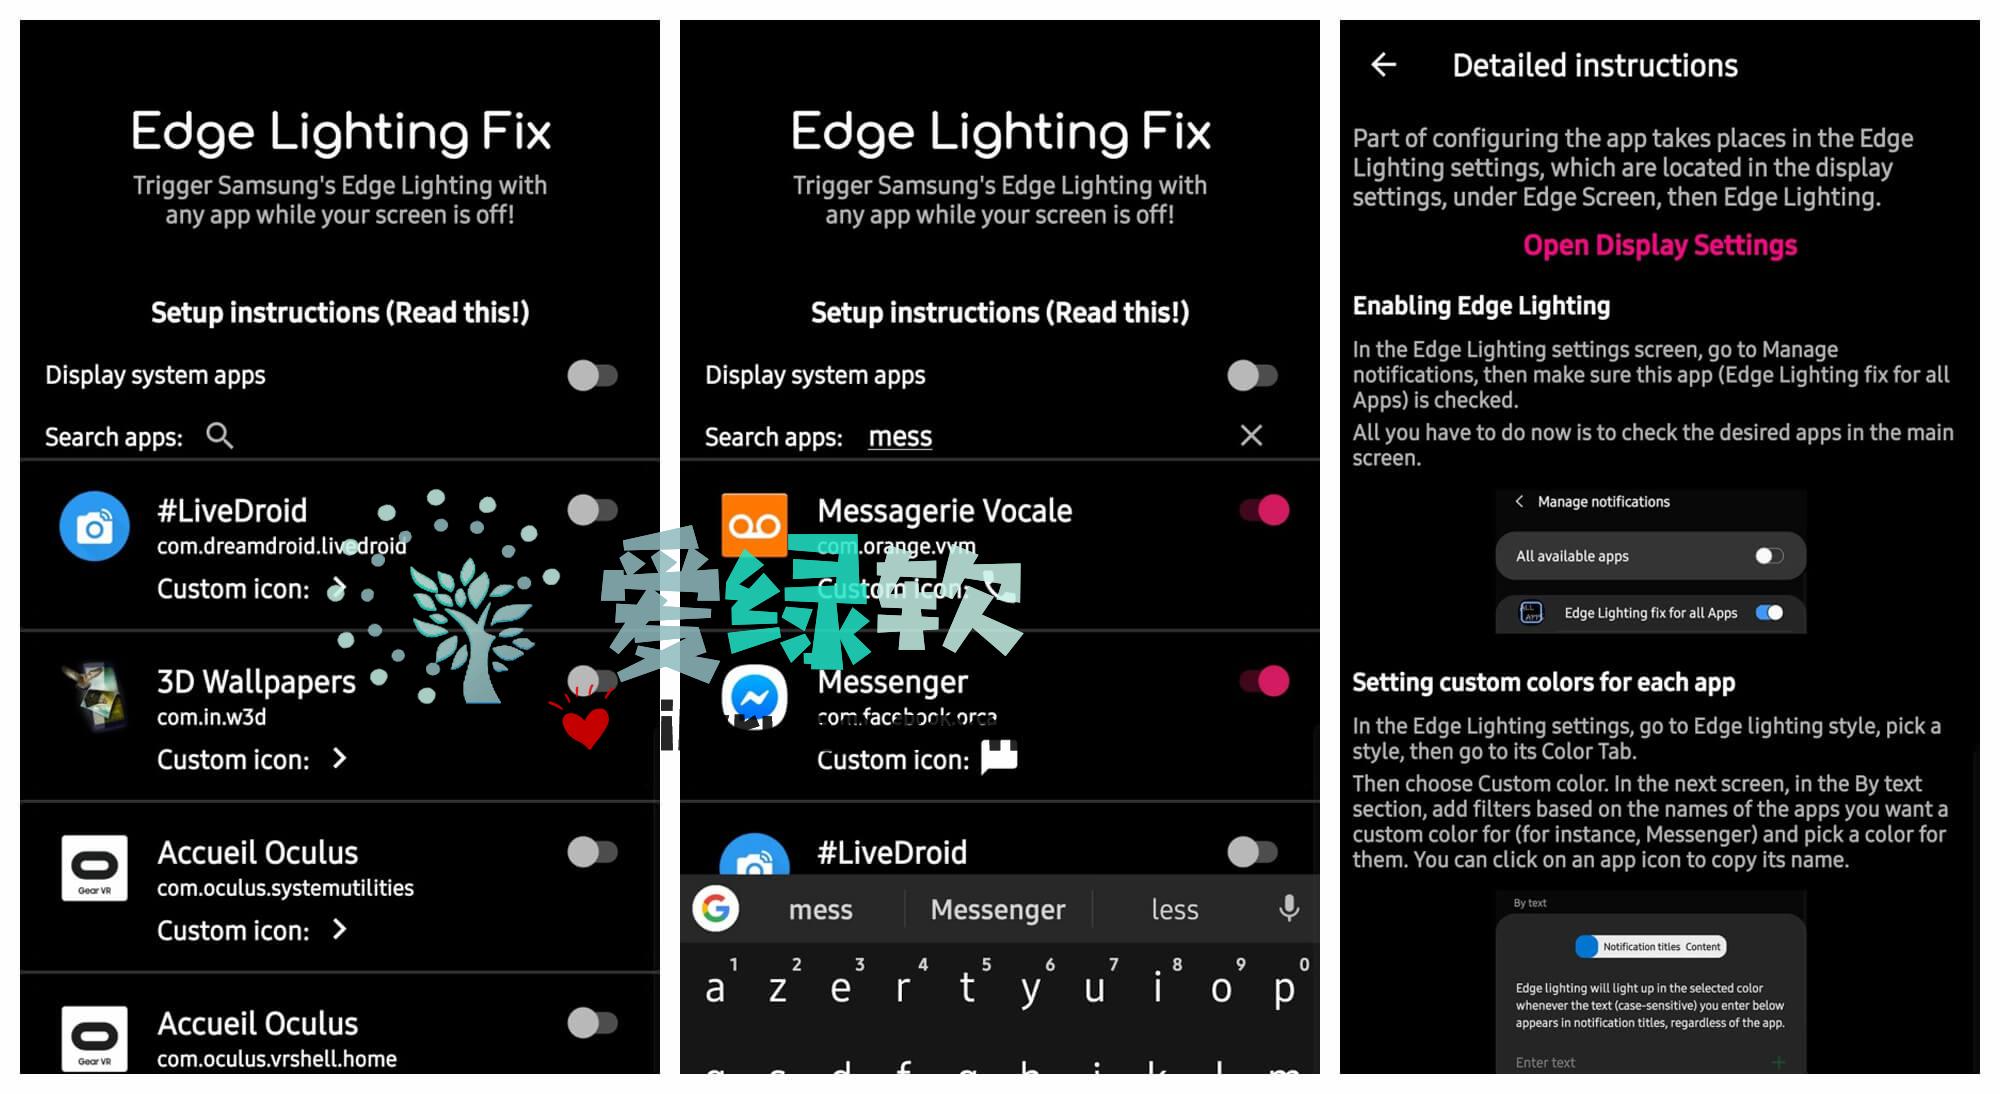 安卓 三星边缘辅助 Edge Lighting fix for All Apps v1.27 付费解锁特别版  